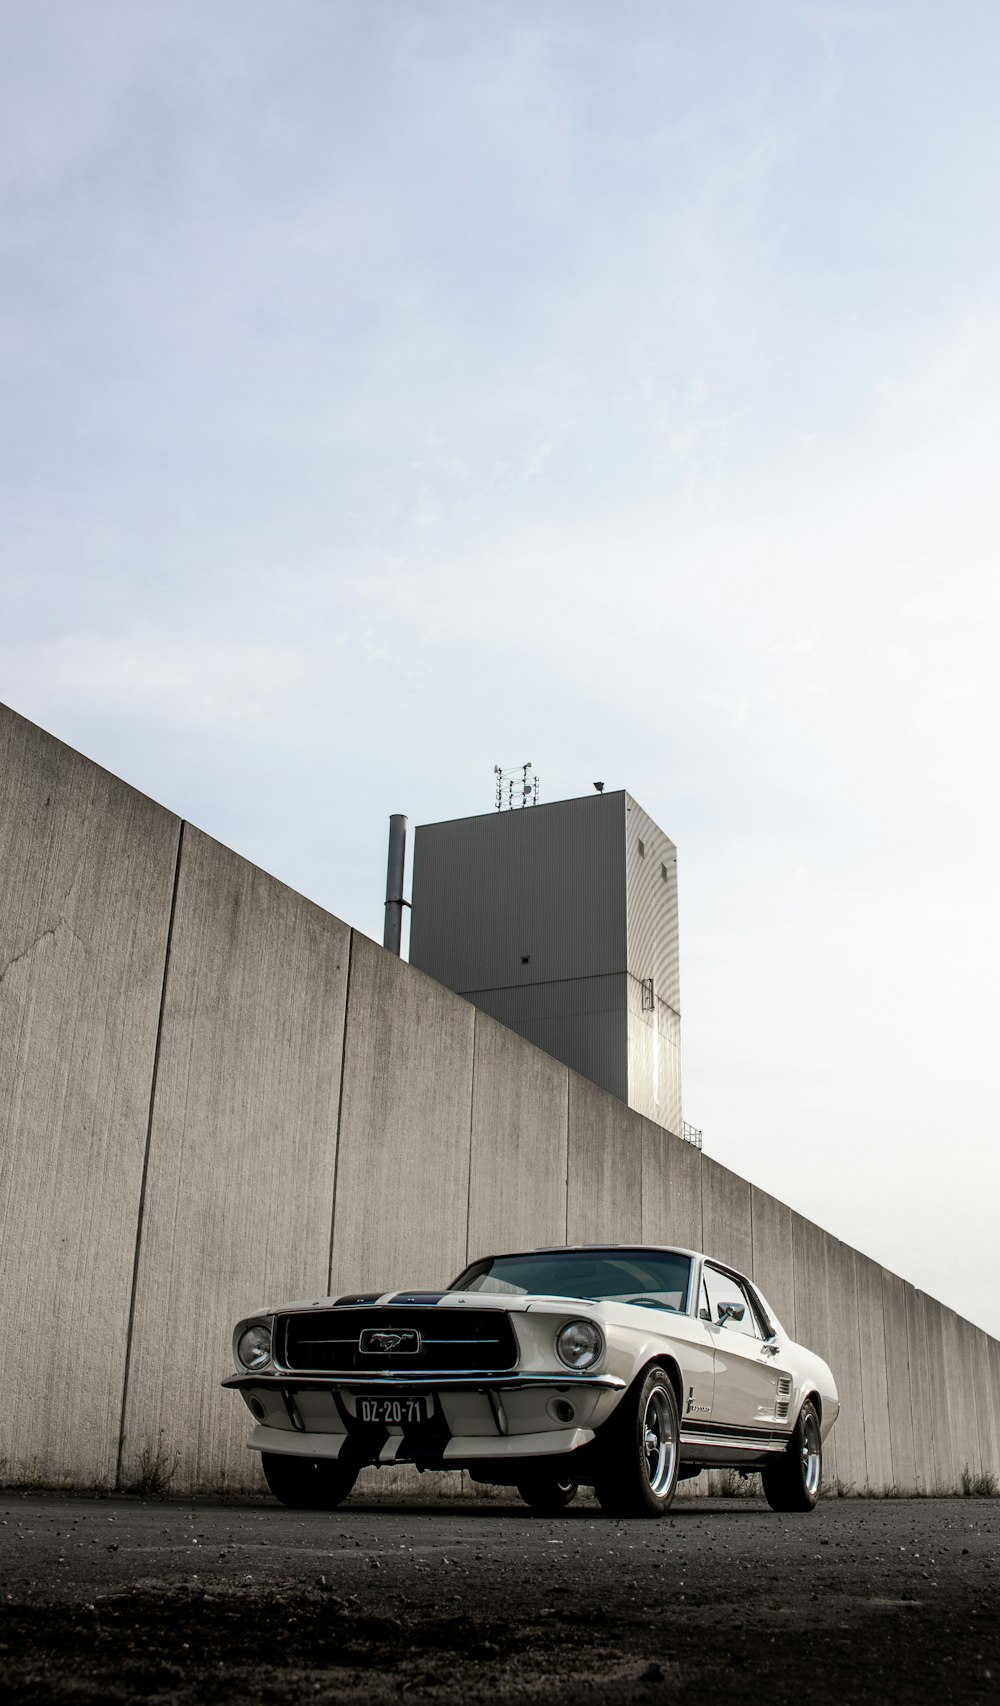 carro preto e branco estacionado ao lado da parede marrom